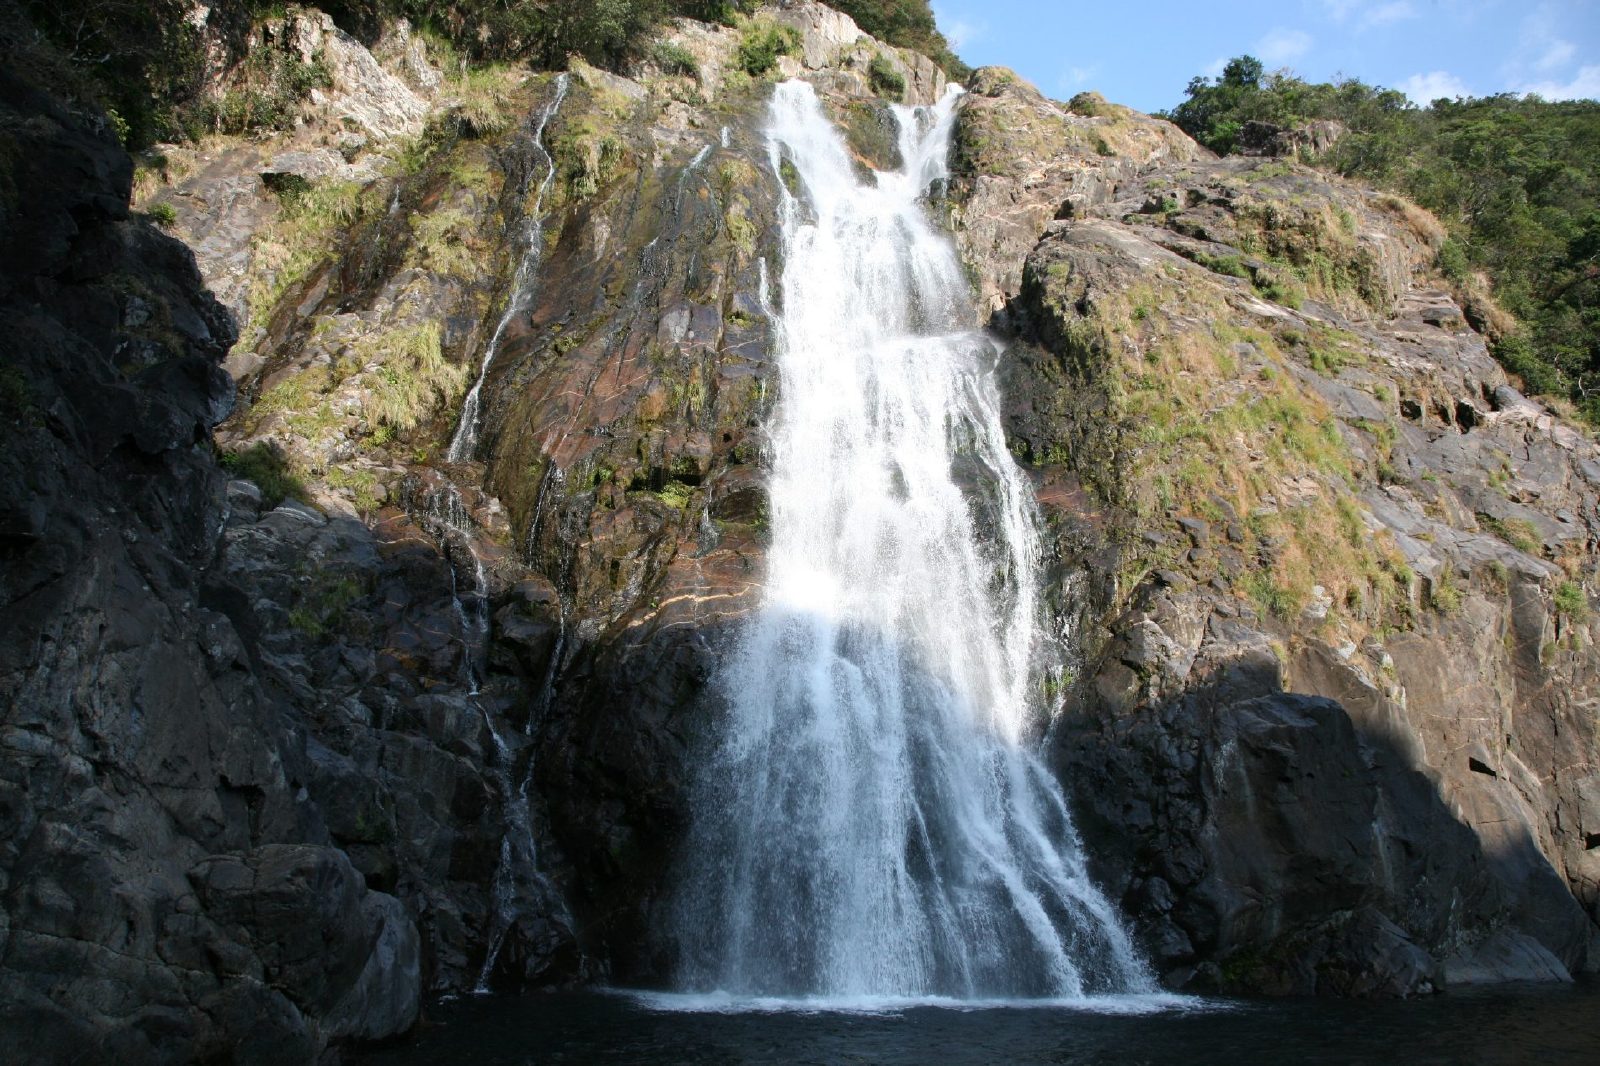 Oko falls